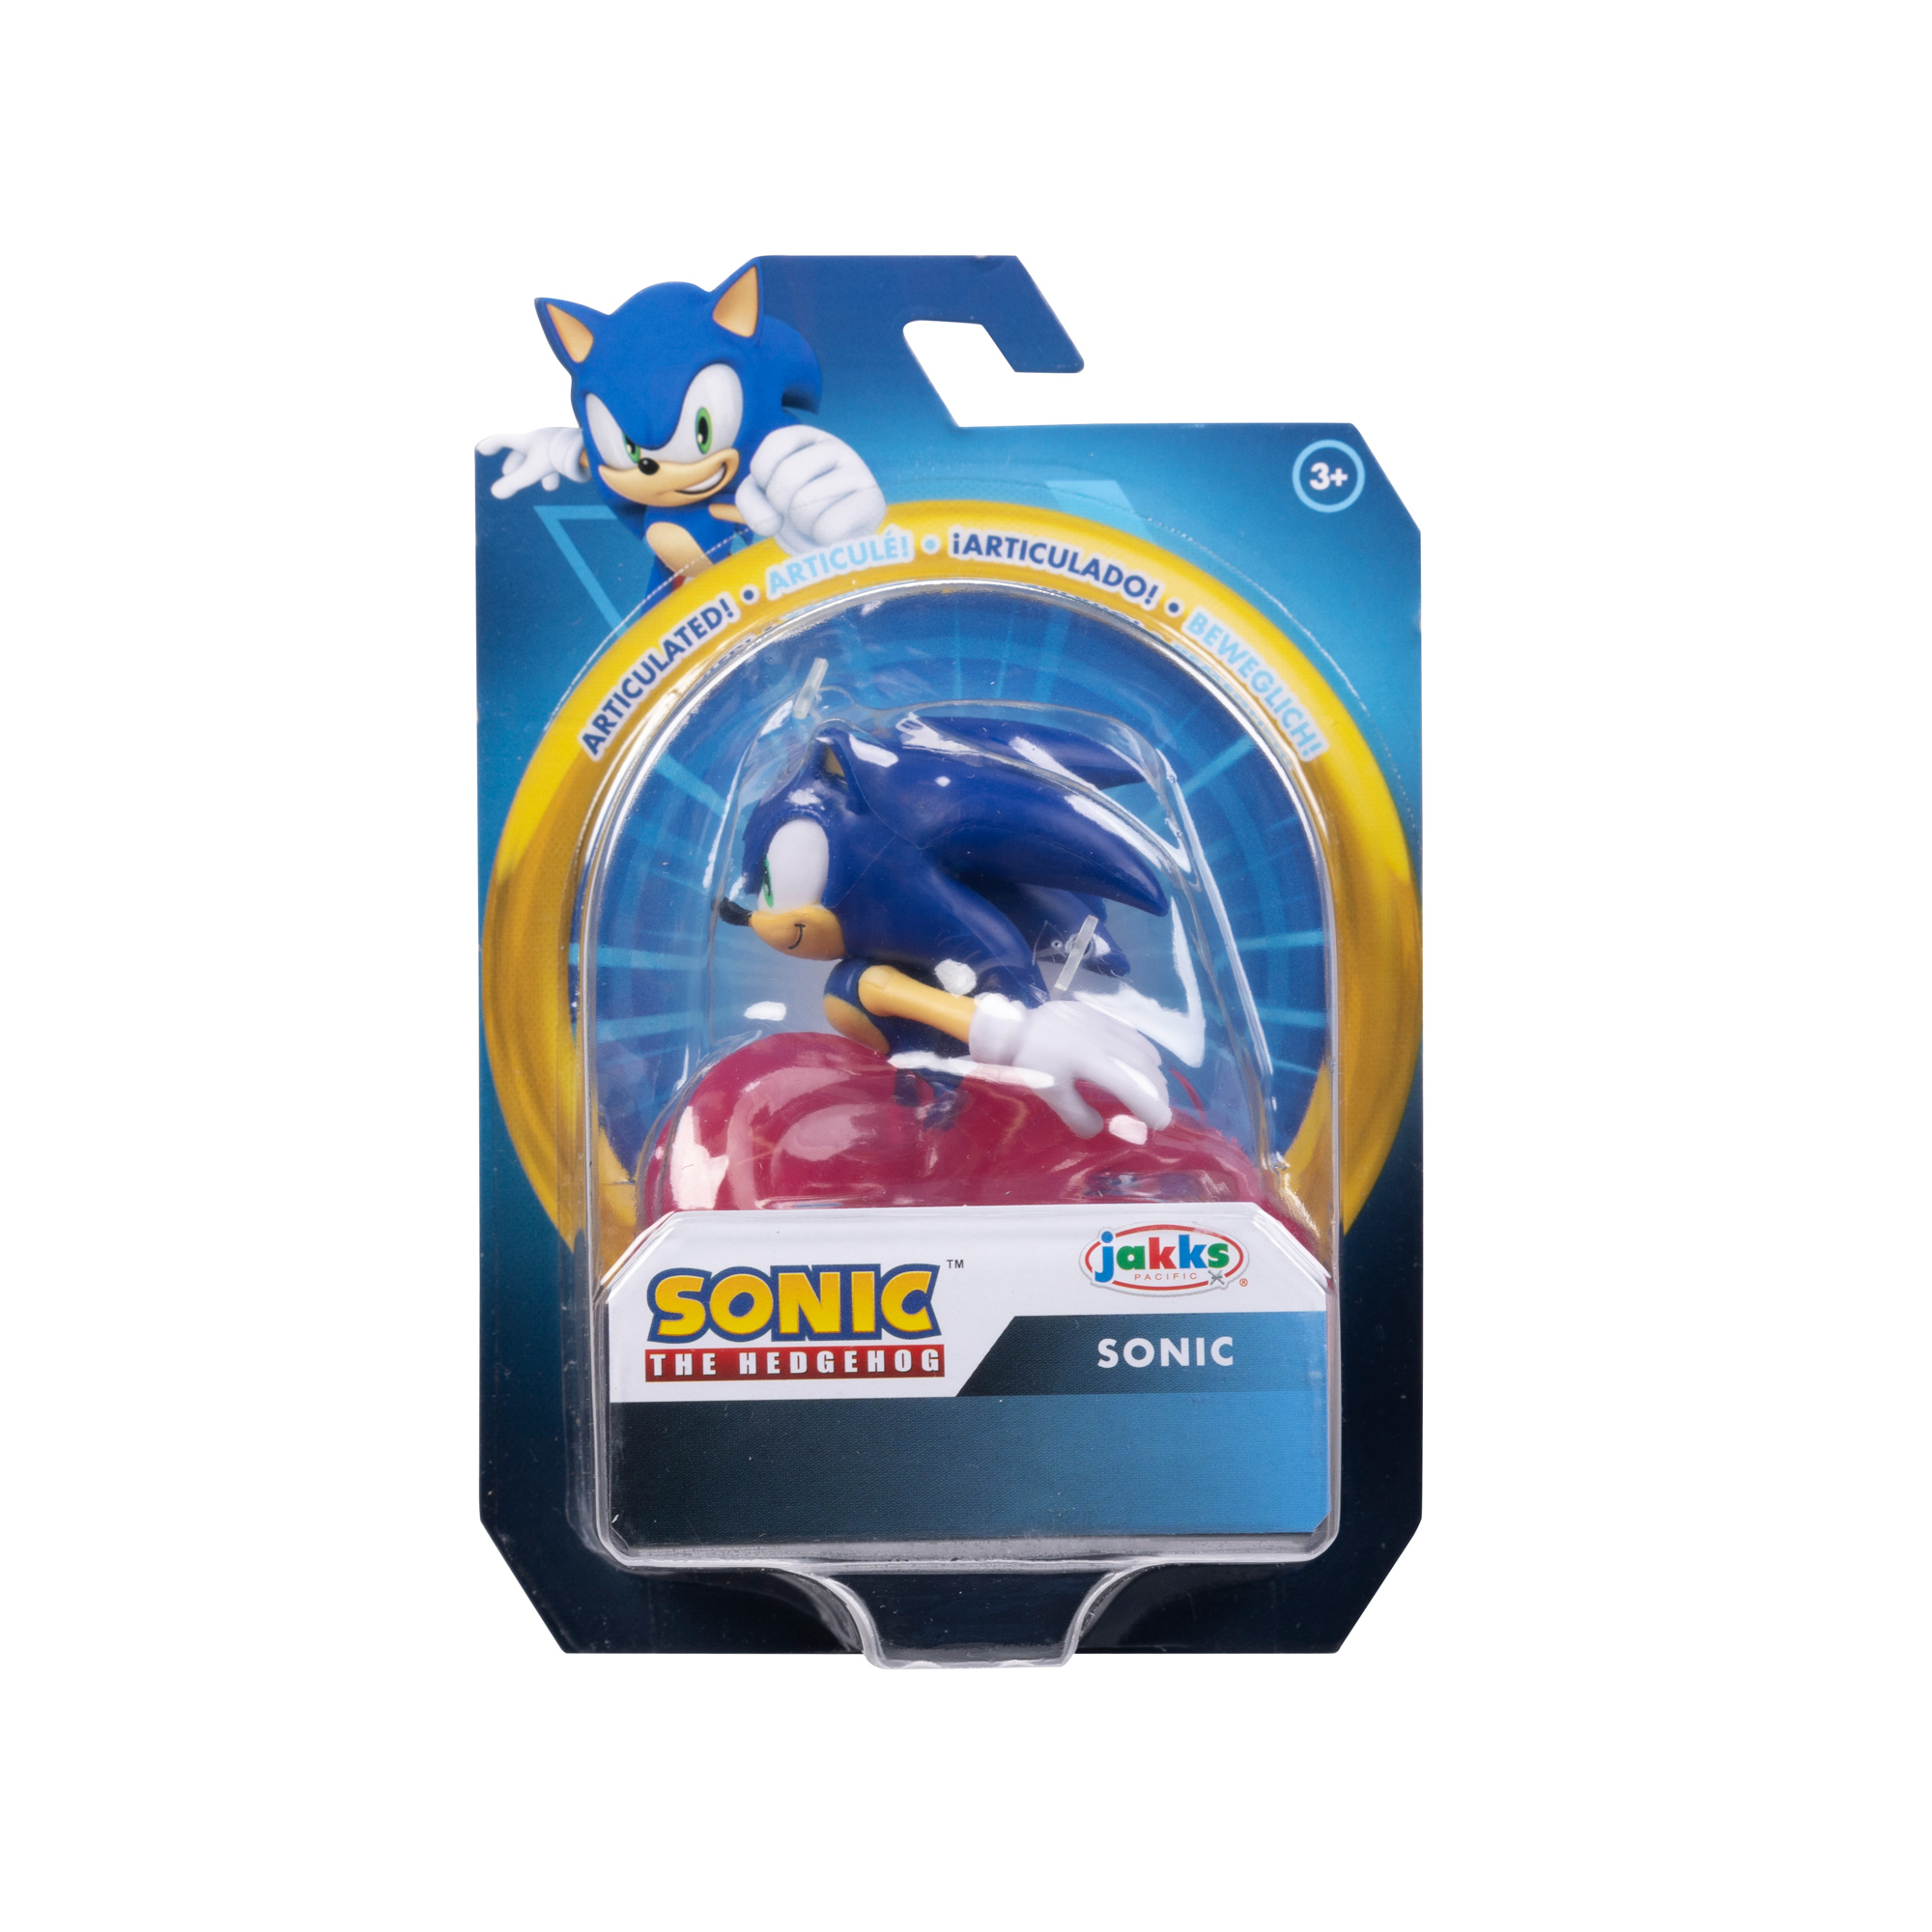 JAKKS Pacific announces extension of Sonic the Hedgehog license 